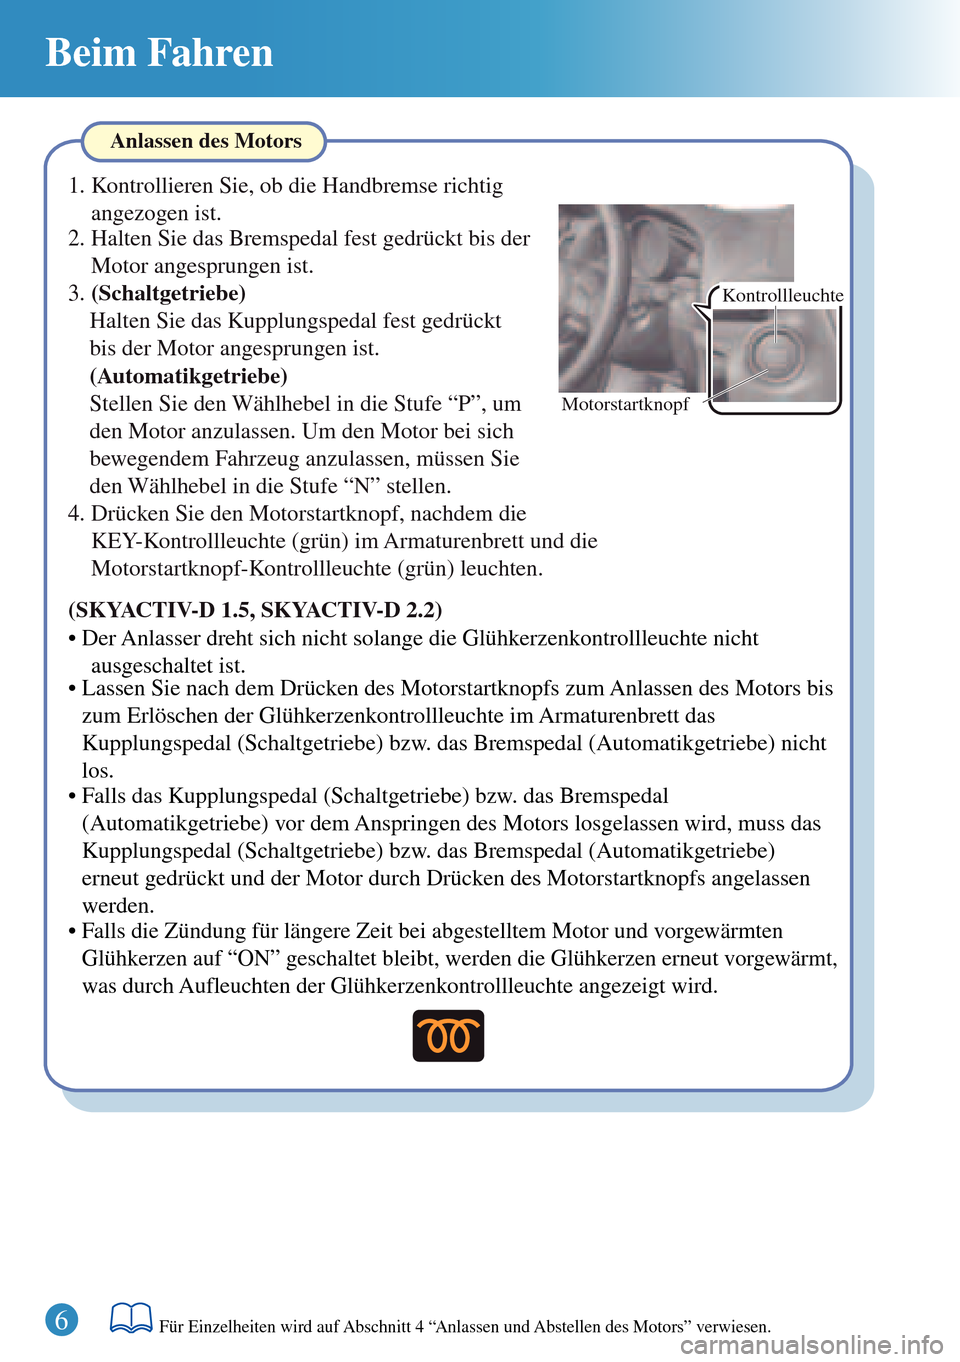 MAZDA MODEL 3 HATCHBACK 2016  Kurzanleitung (in German) Beim Fahren
6Für Einzelheiten wird auf Abschnitt 4 “Anlassen und Abstellen des Motors” verwiesen.
Kontrollleuchte
Motorstartknopf
Anlassen des Motors
(SKYACTIV-D 1.5, SKYACTIV-D 2.2)
• Der Anla